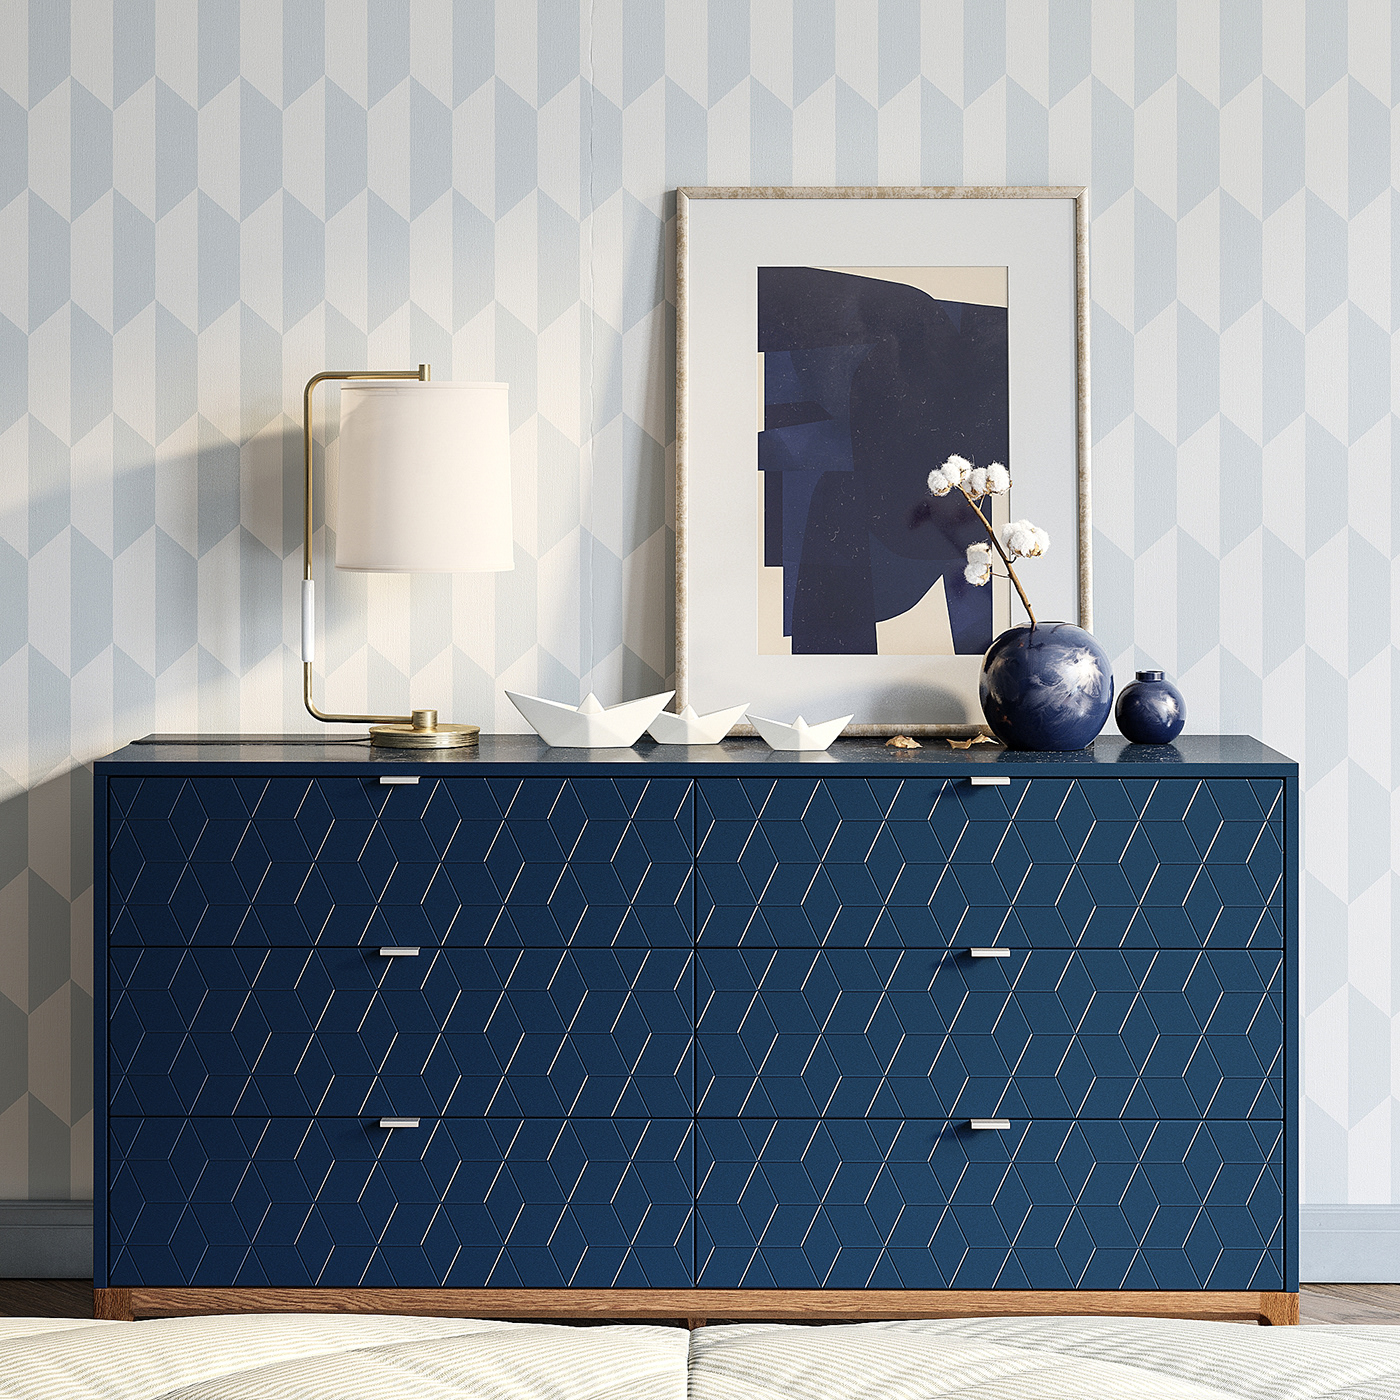 3ds max corona render  furniture design  idea interior design  visualization